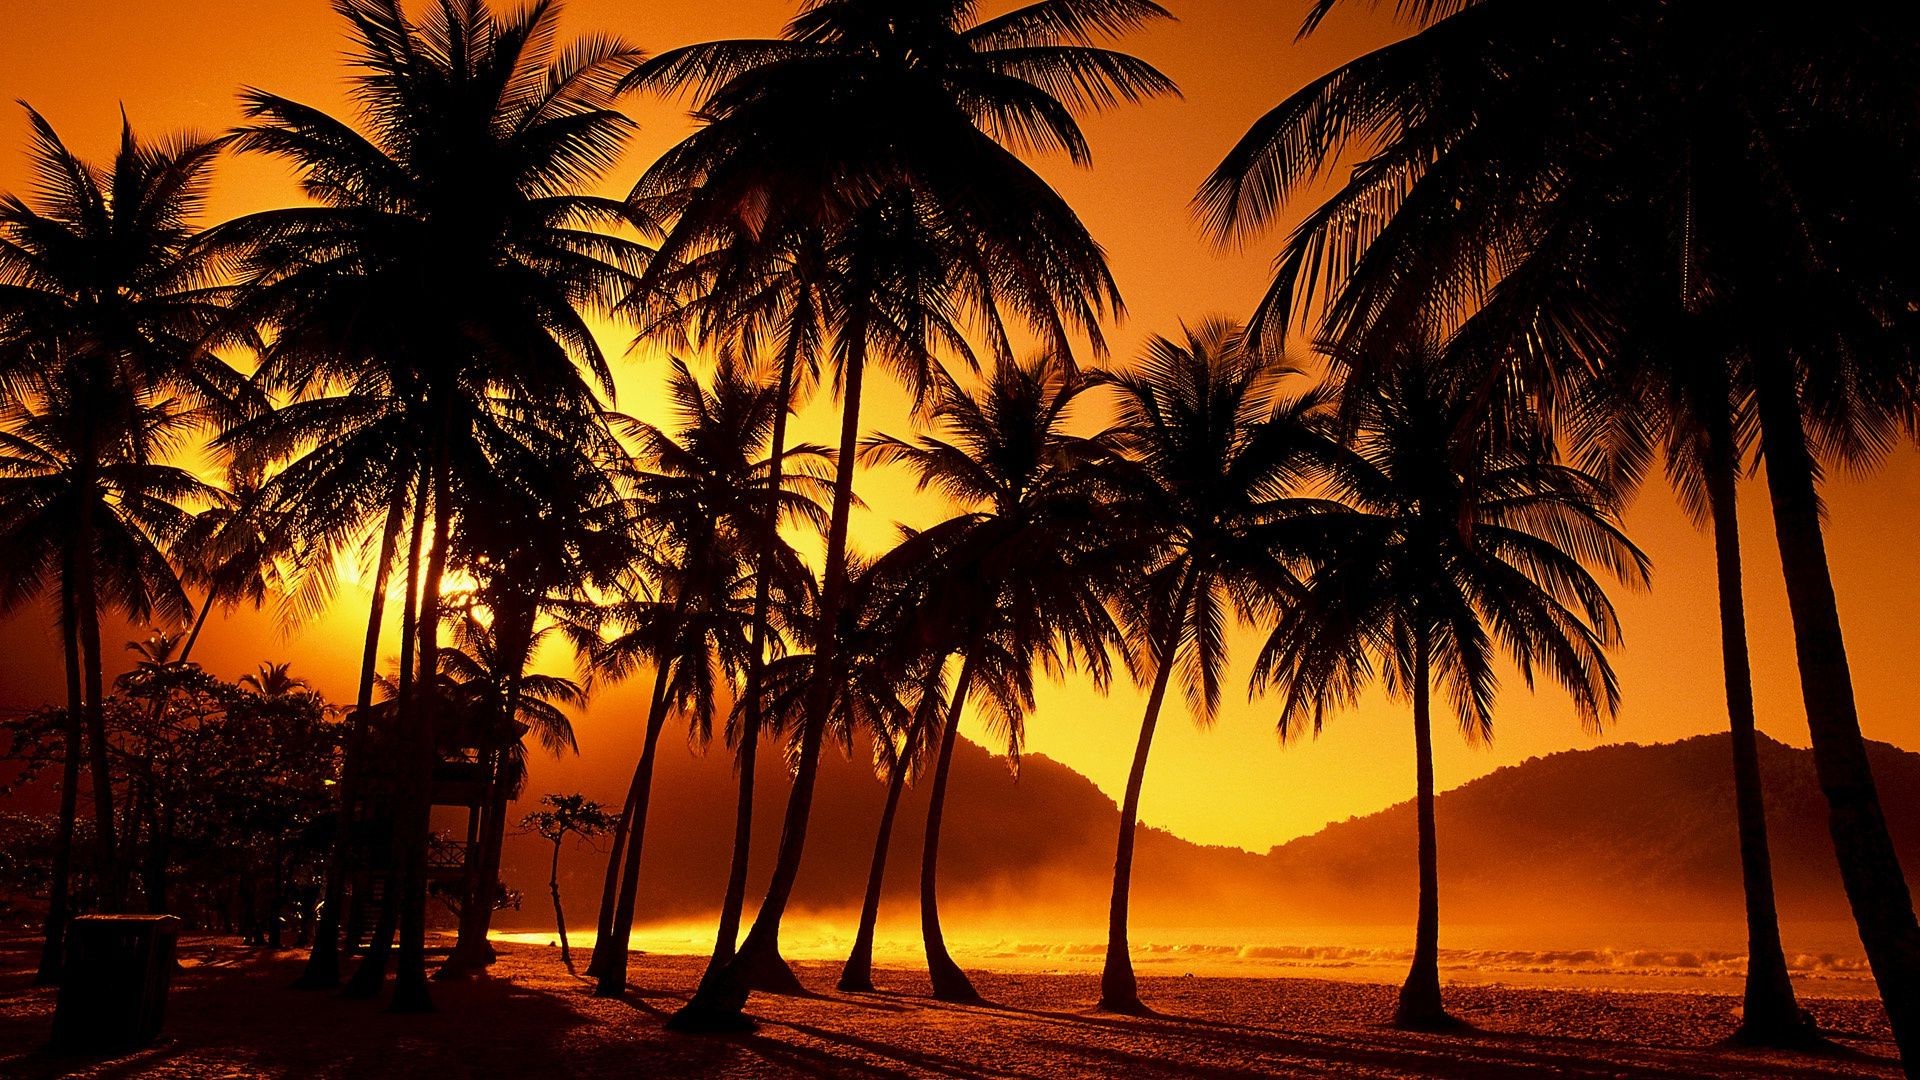 закат и рассвет пляж ладони солнце тропический закат песок кокосовое моря экзотические лето океан хорошую погоду остров пейзаж силуэт дерево отпуск идиллия рай